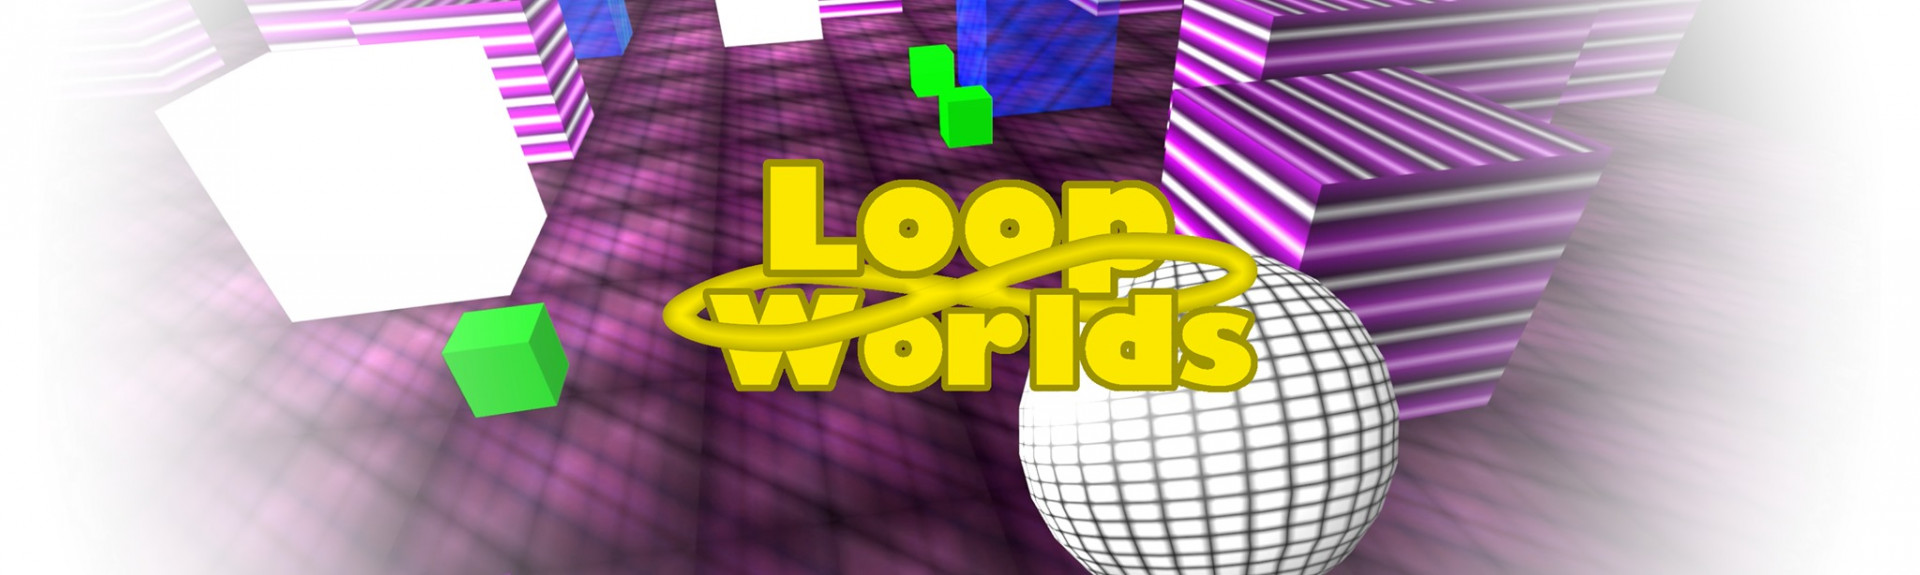 LoopWorlds